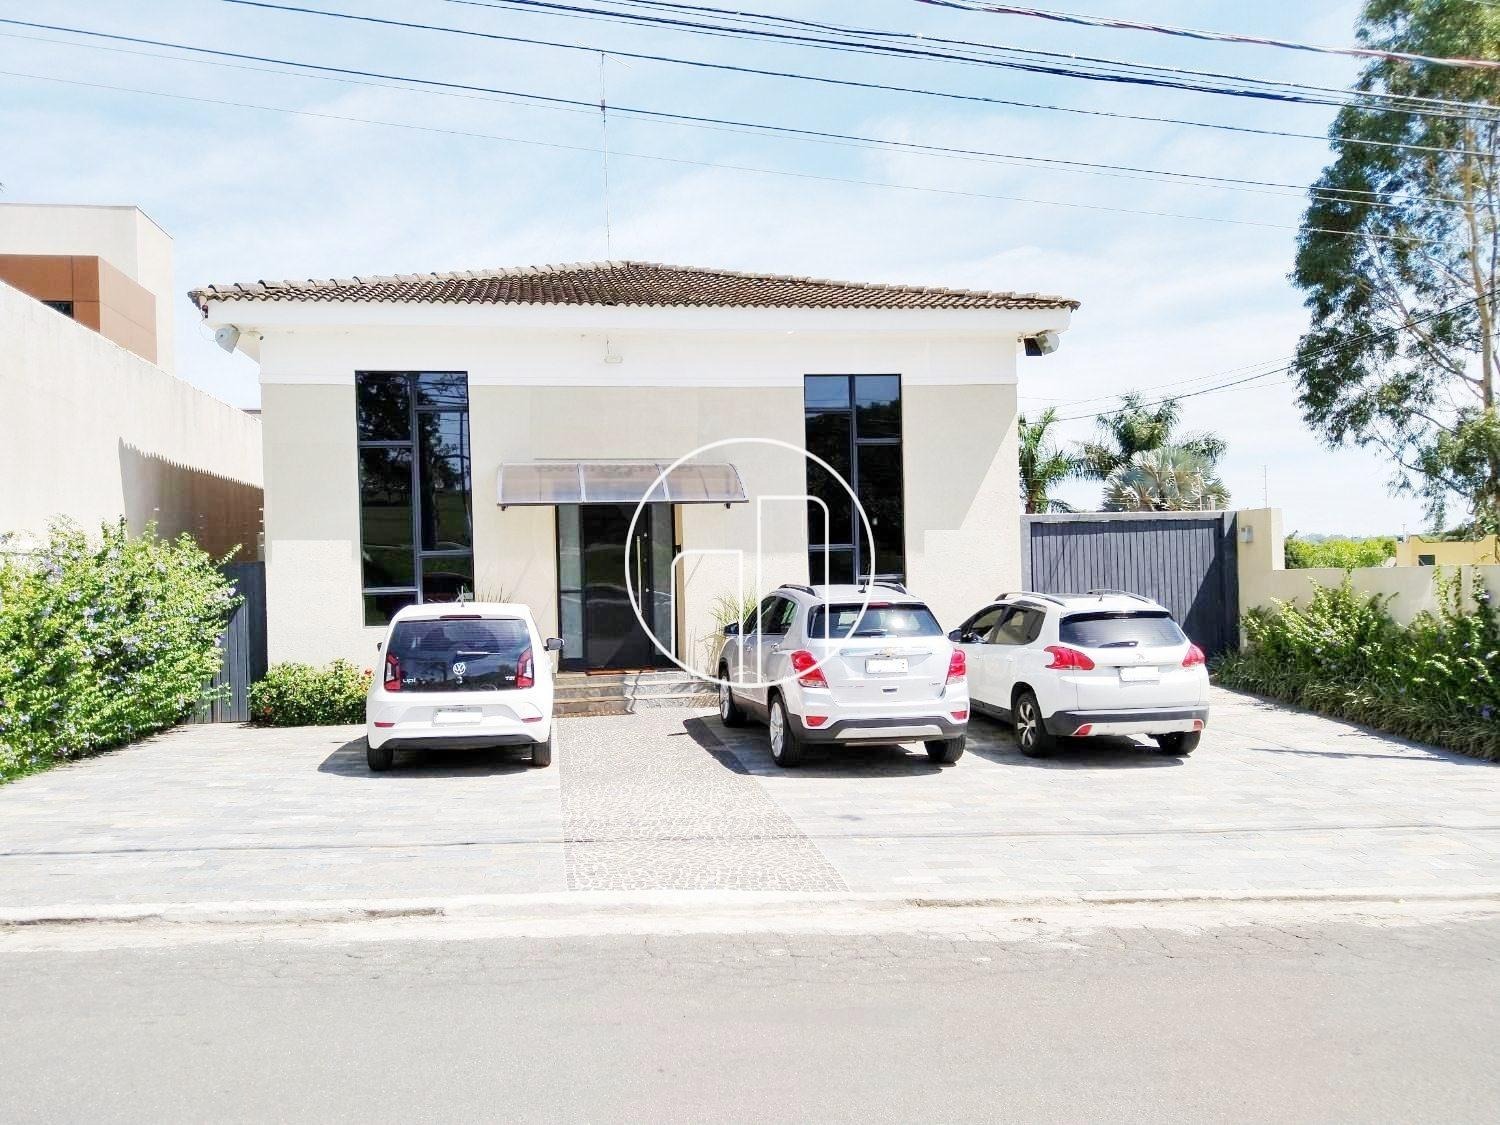 Piccoloto - Casa à venda no Bairro das Palmeiras em Campinas